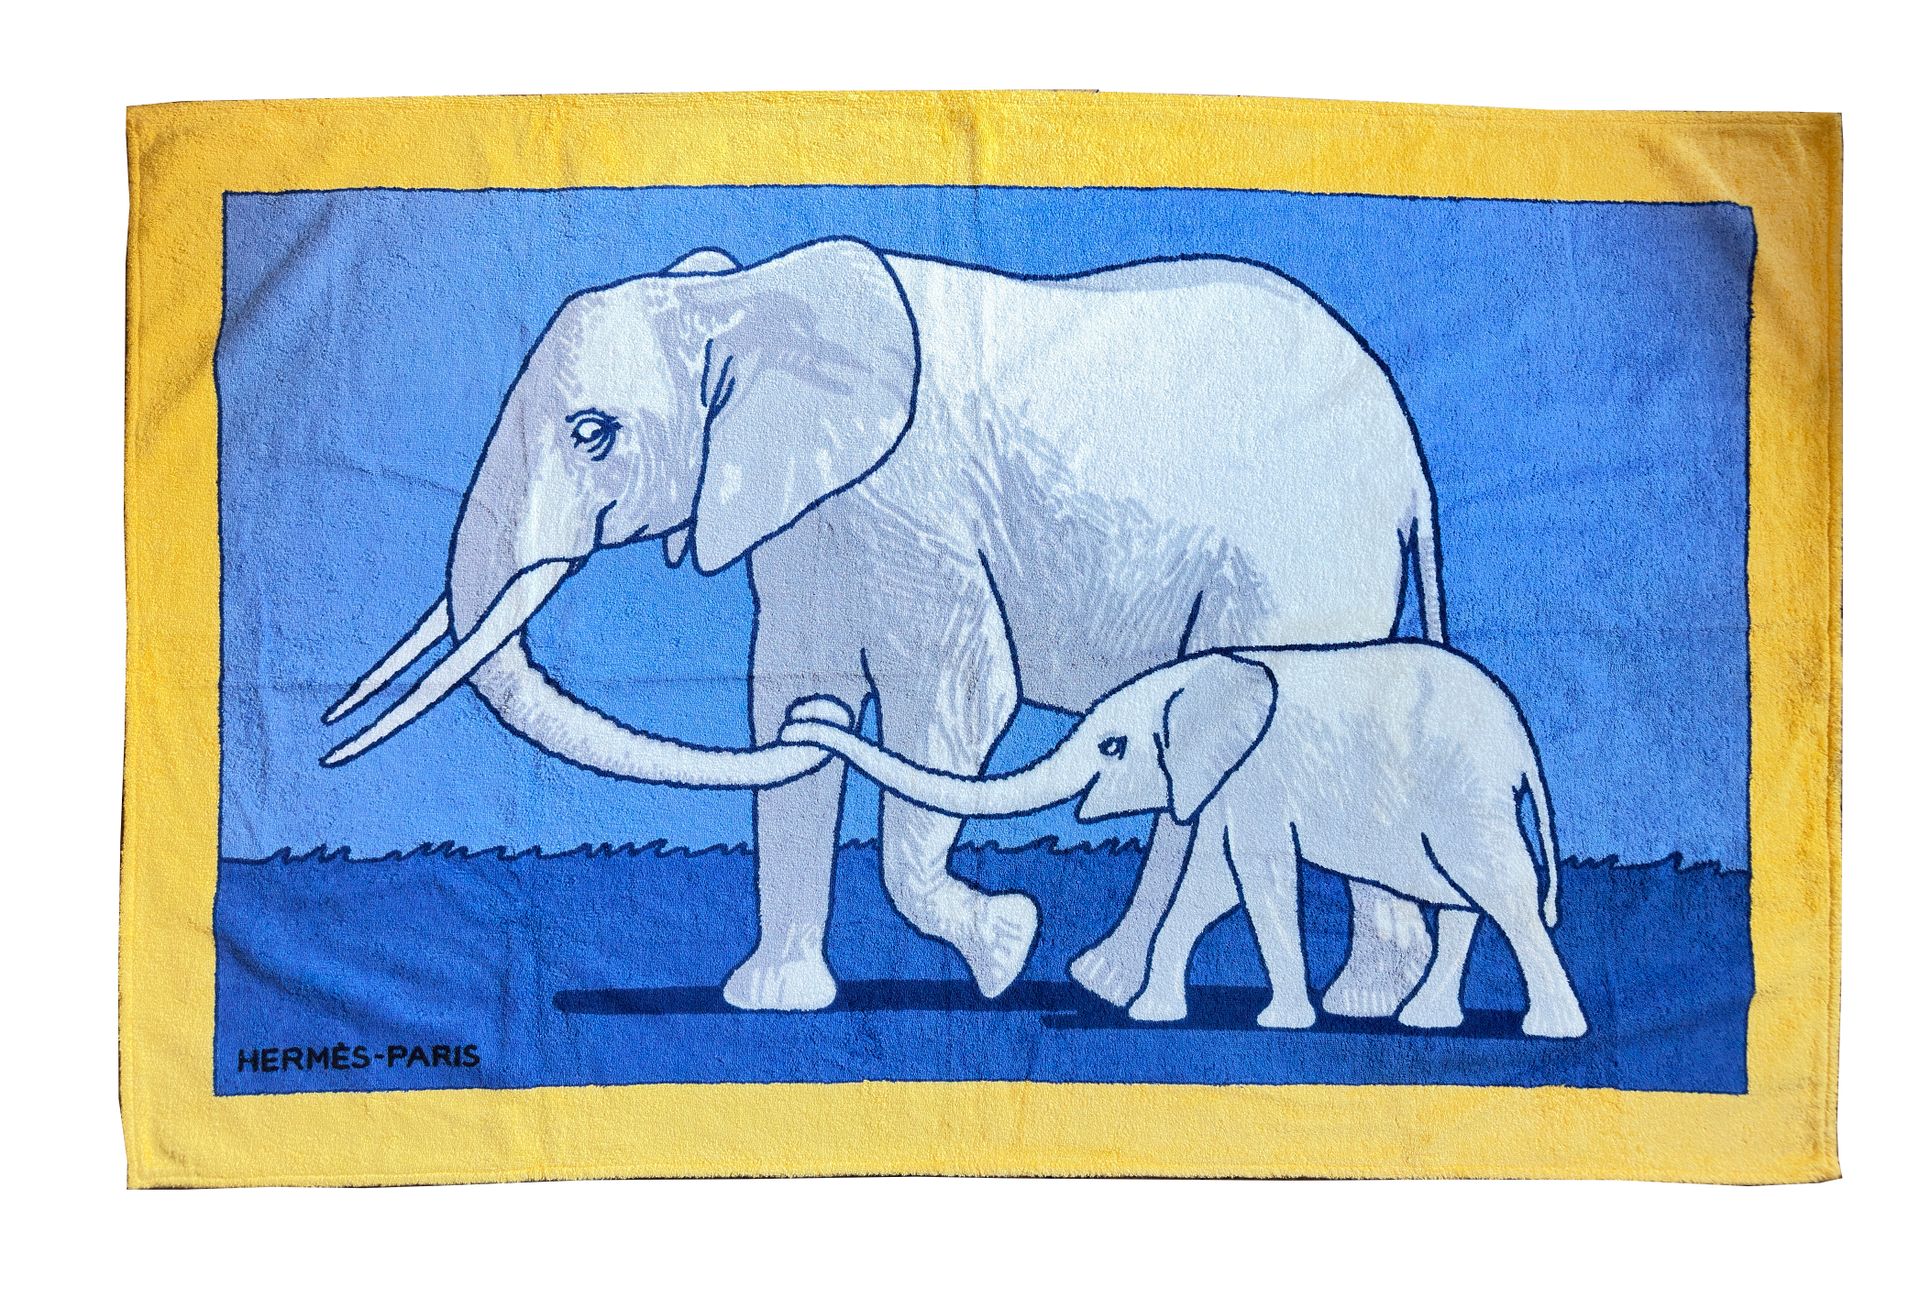 Null 巴黎爱马仕
纯棉毛圈浴巾，蓝色背景，黄色边框，饰有大象和小象。
90 x 150 厘米